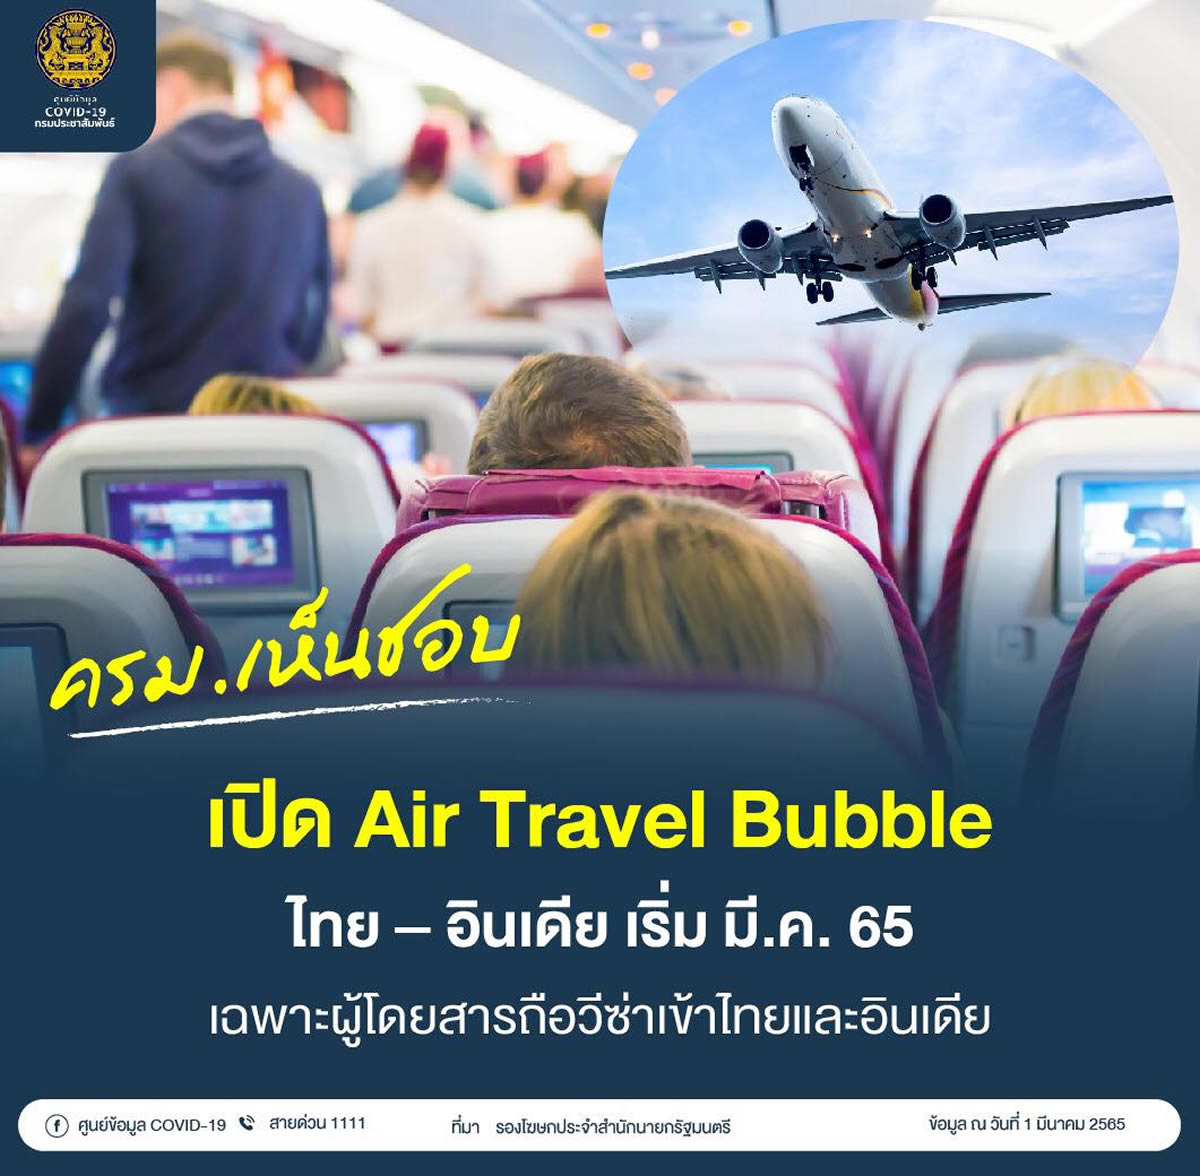 タイとインドの「空のトラベルバブル」が2022年3月に開始